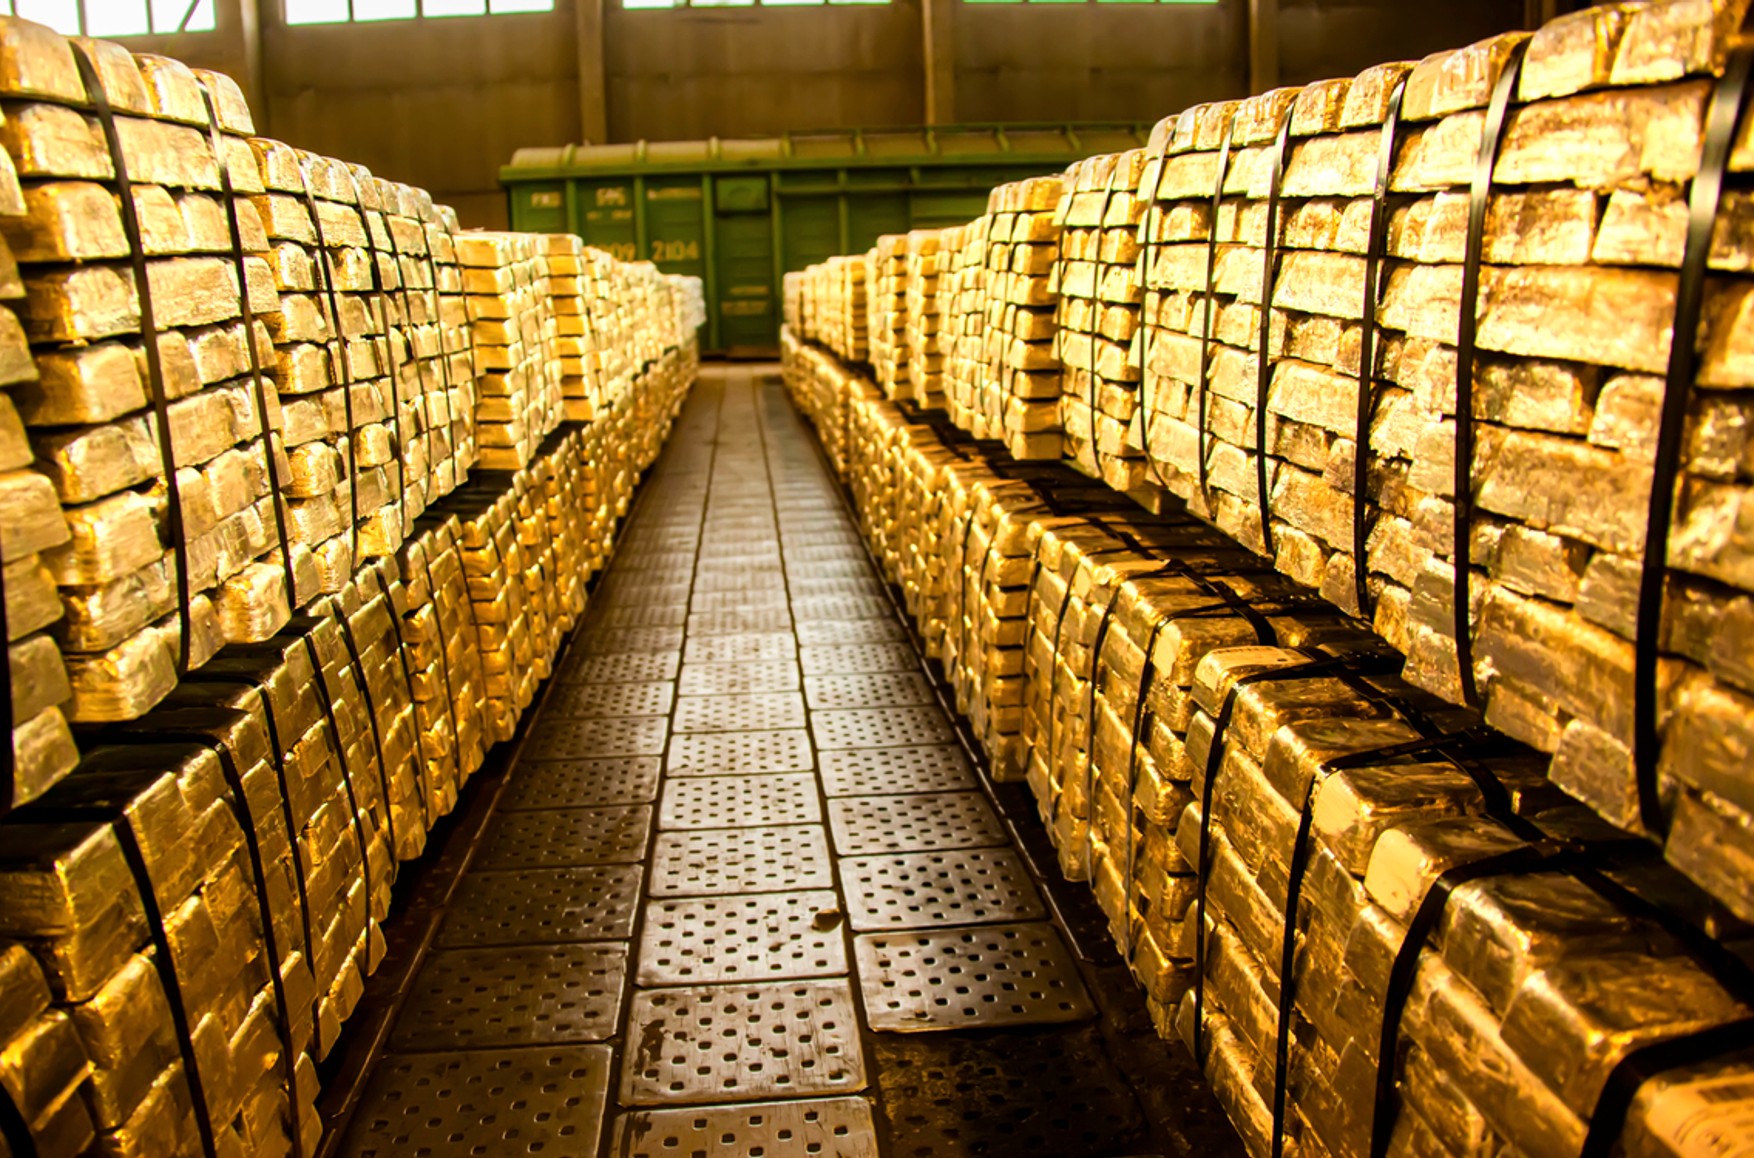 ЧВК Вагнера заработает миллиард долларов на золоте в ЦАР, эти деньги пойдут на оружие — Politico